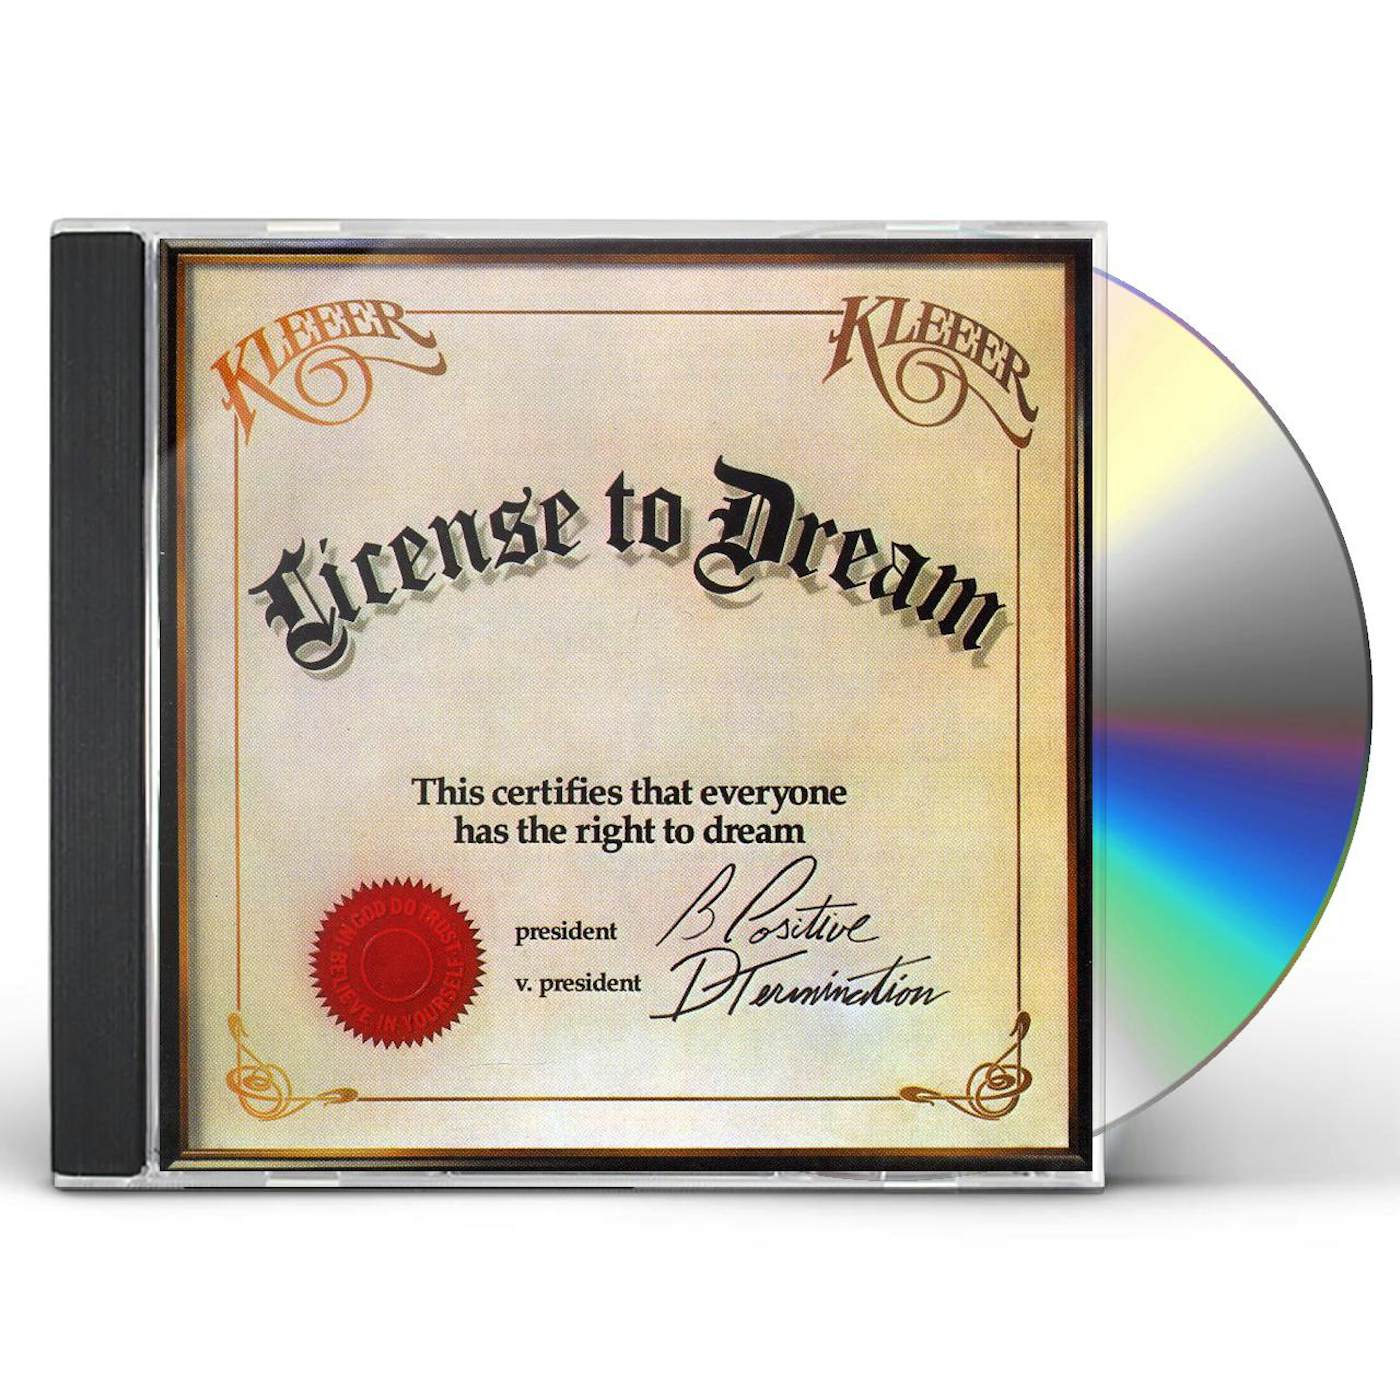 Kleeer LICENSE DREAM CD